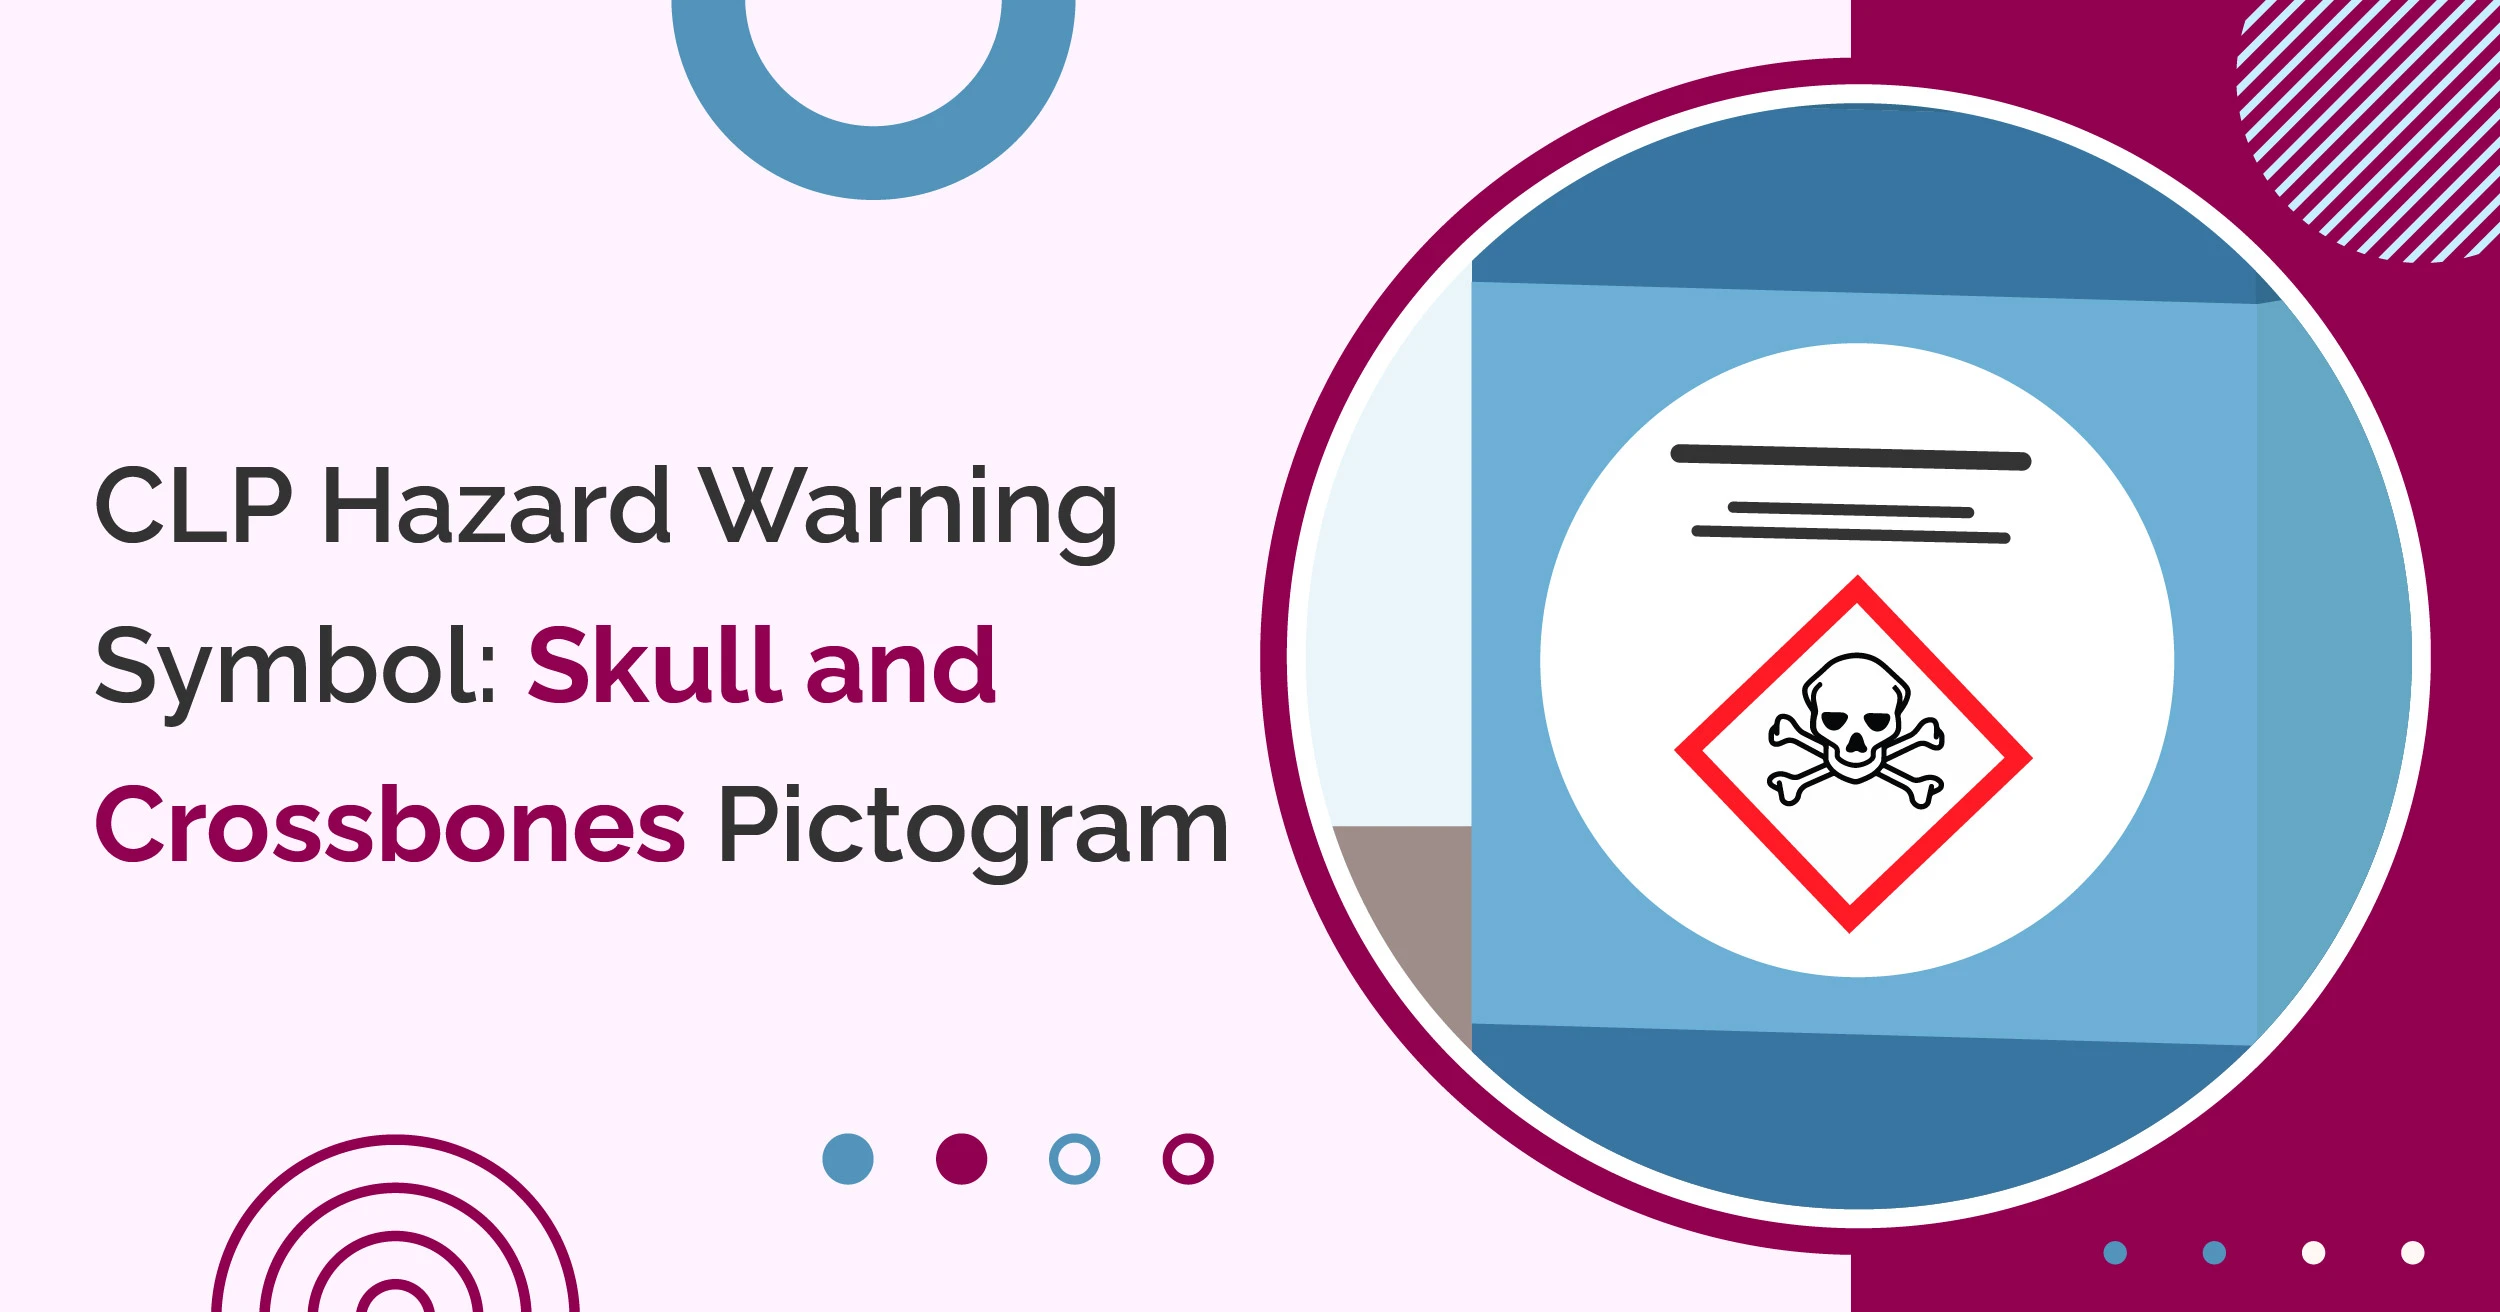 CLP Hazard Warning Symbol: Skull and Crossbones Pictogram